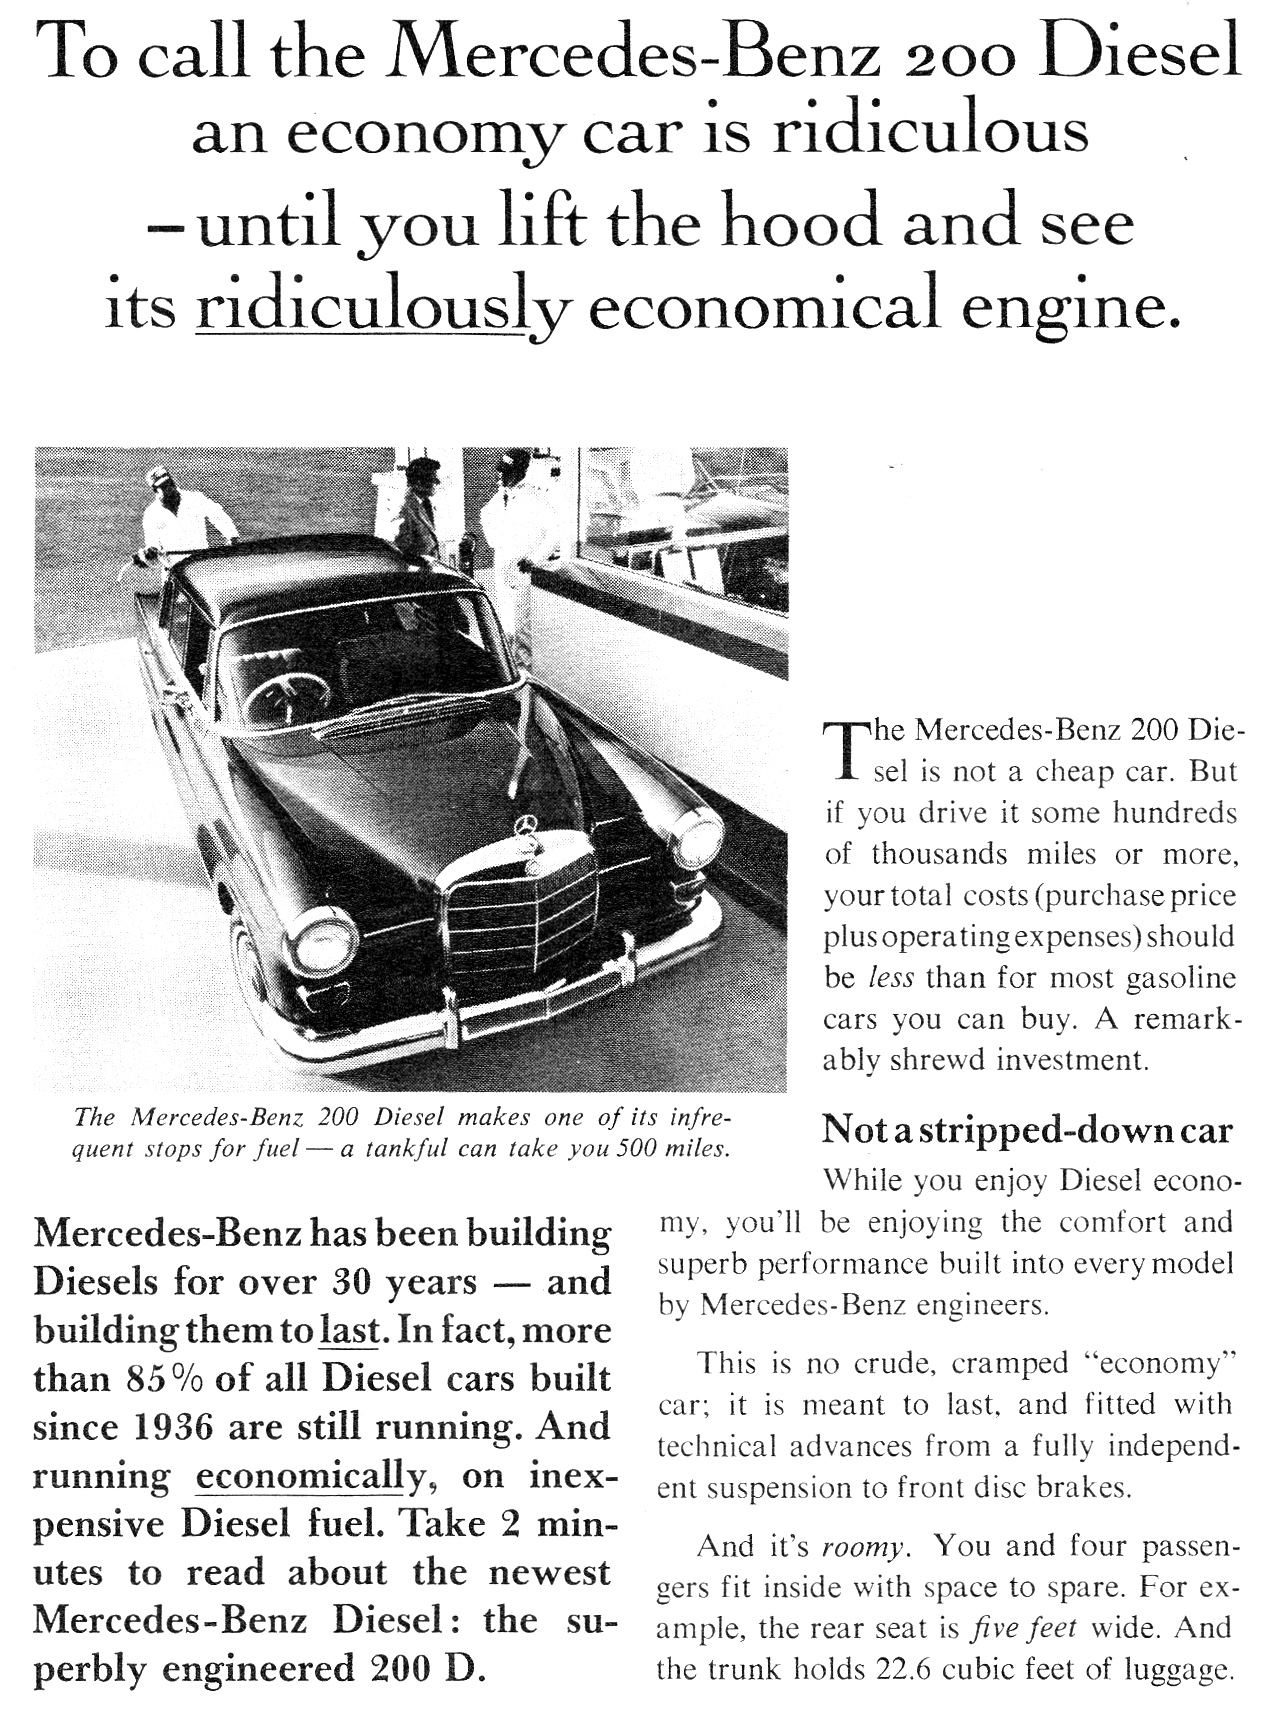 1967 Mercedes-Benz 200 Diesel Page 1